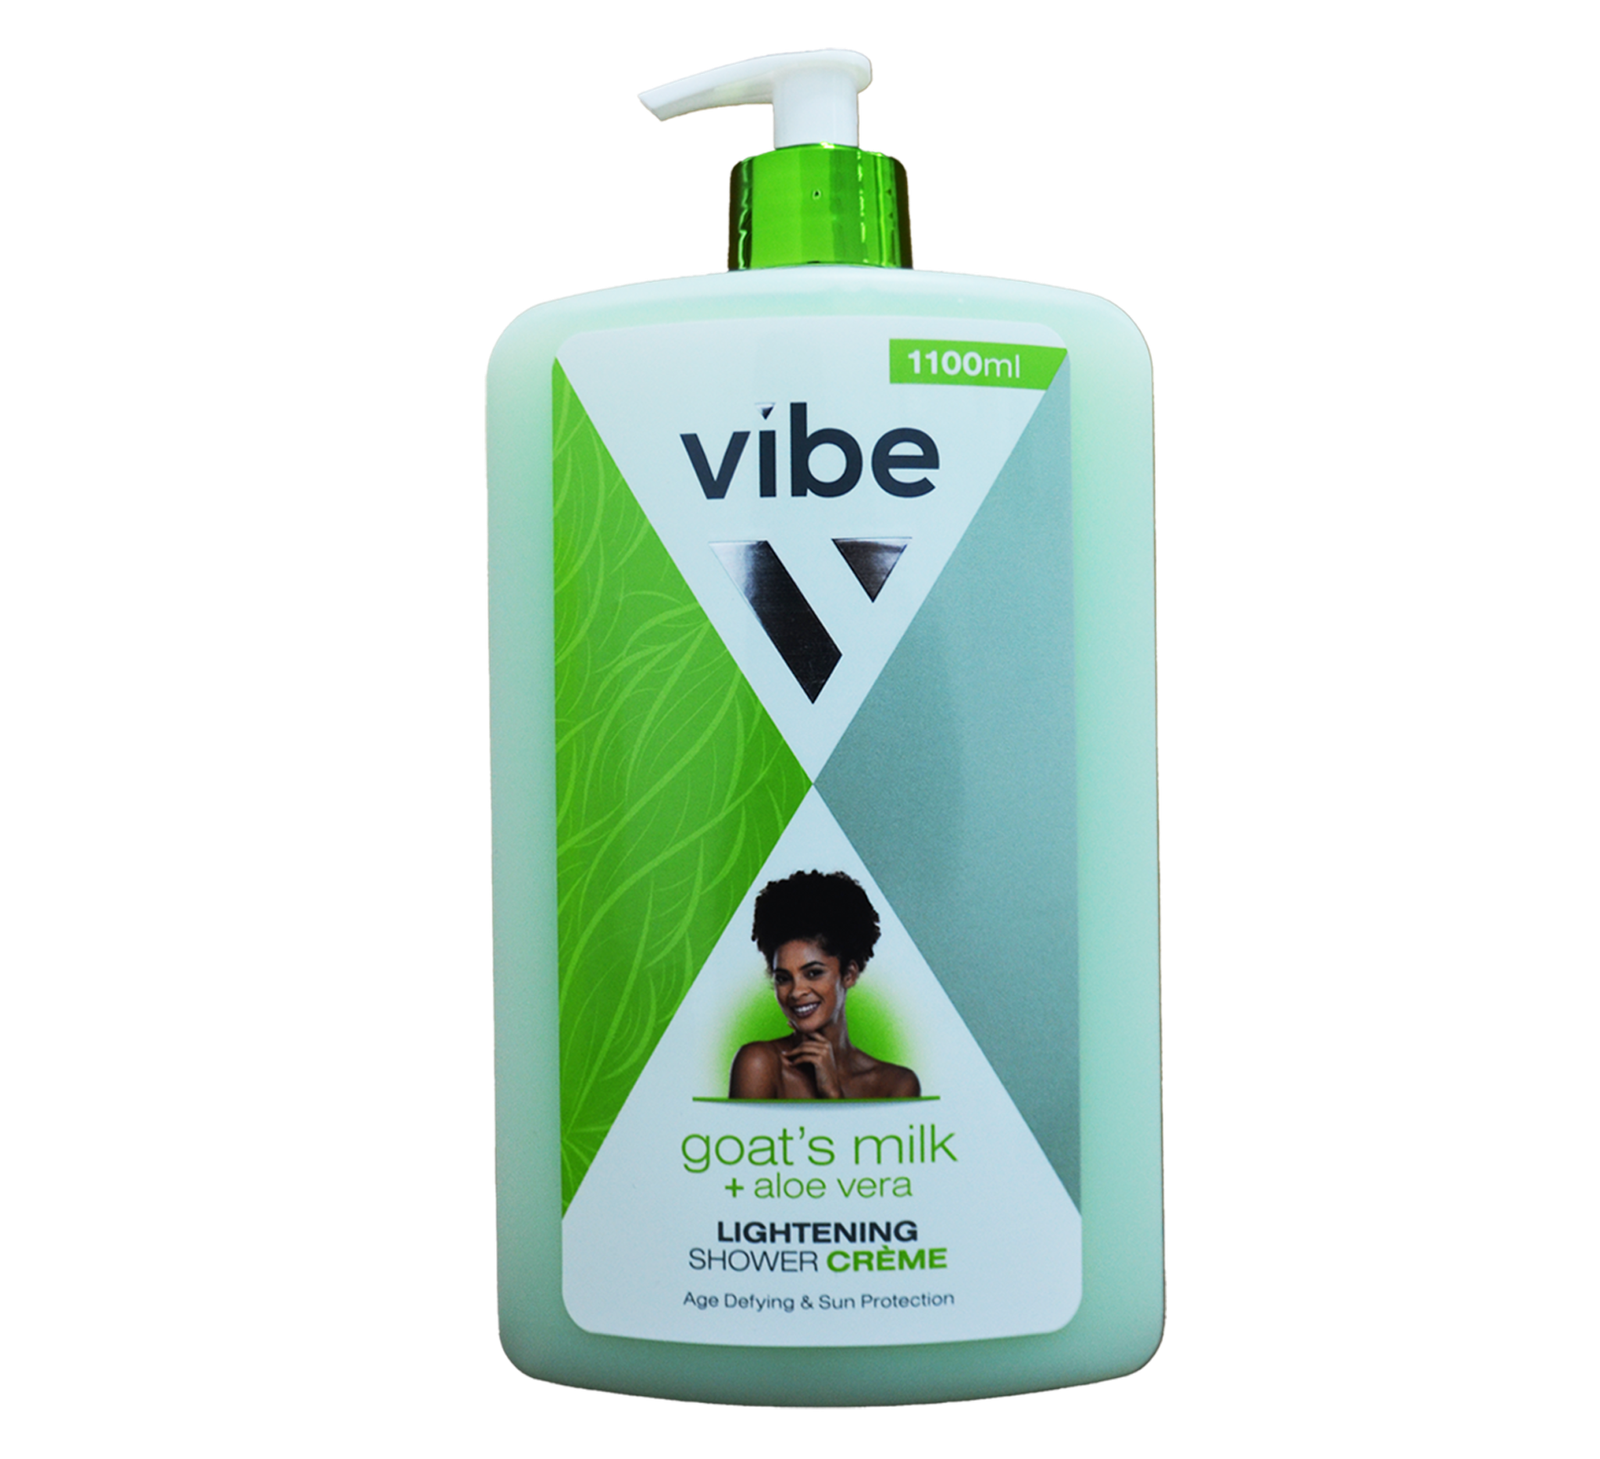 Vibe Shower Gel Goat Milk  1.1ltr - Aloe Vera